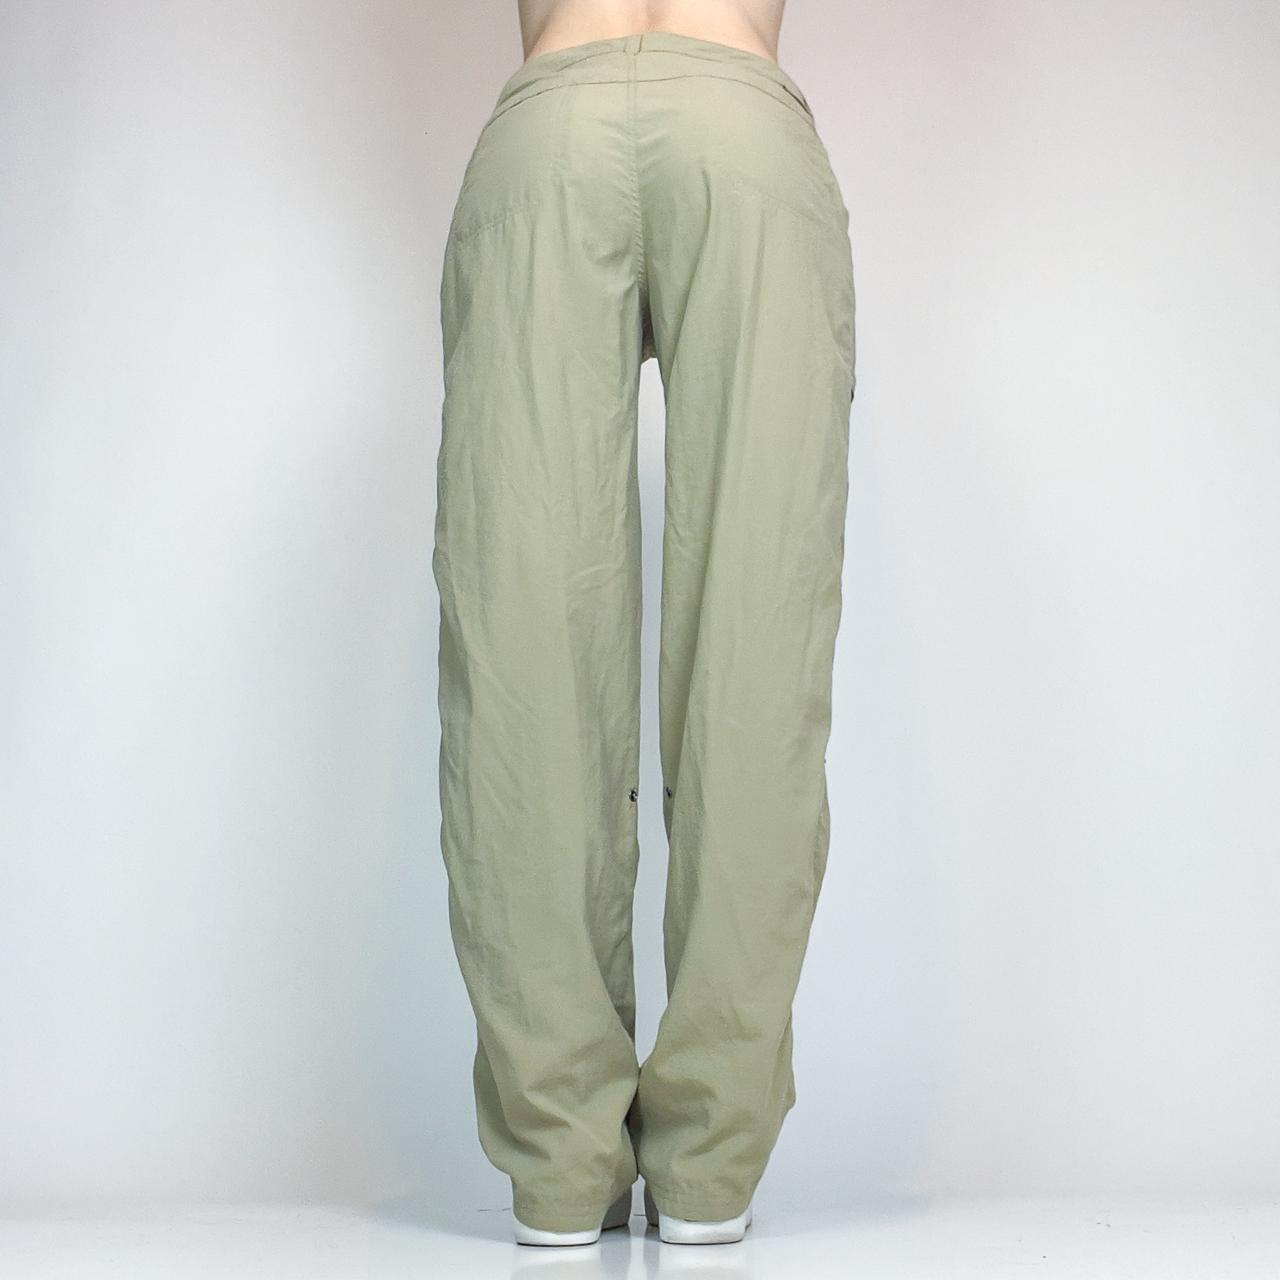 ExOfficio Women's Khaki and Tan Trousers (4)